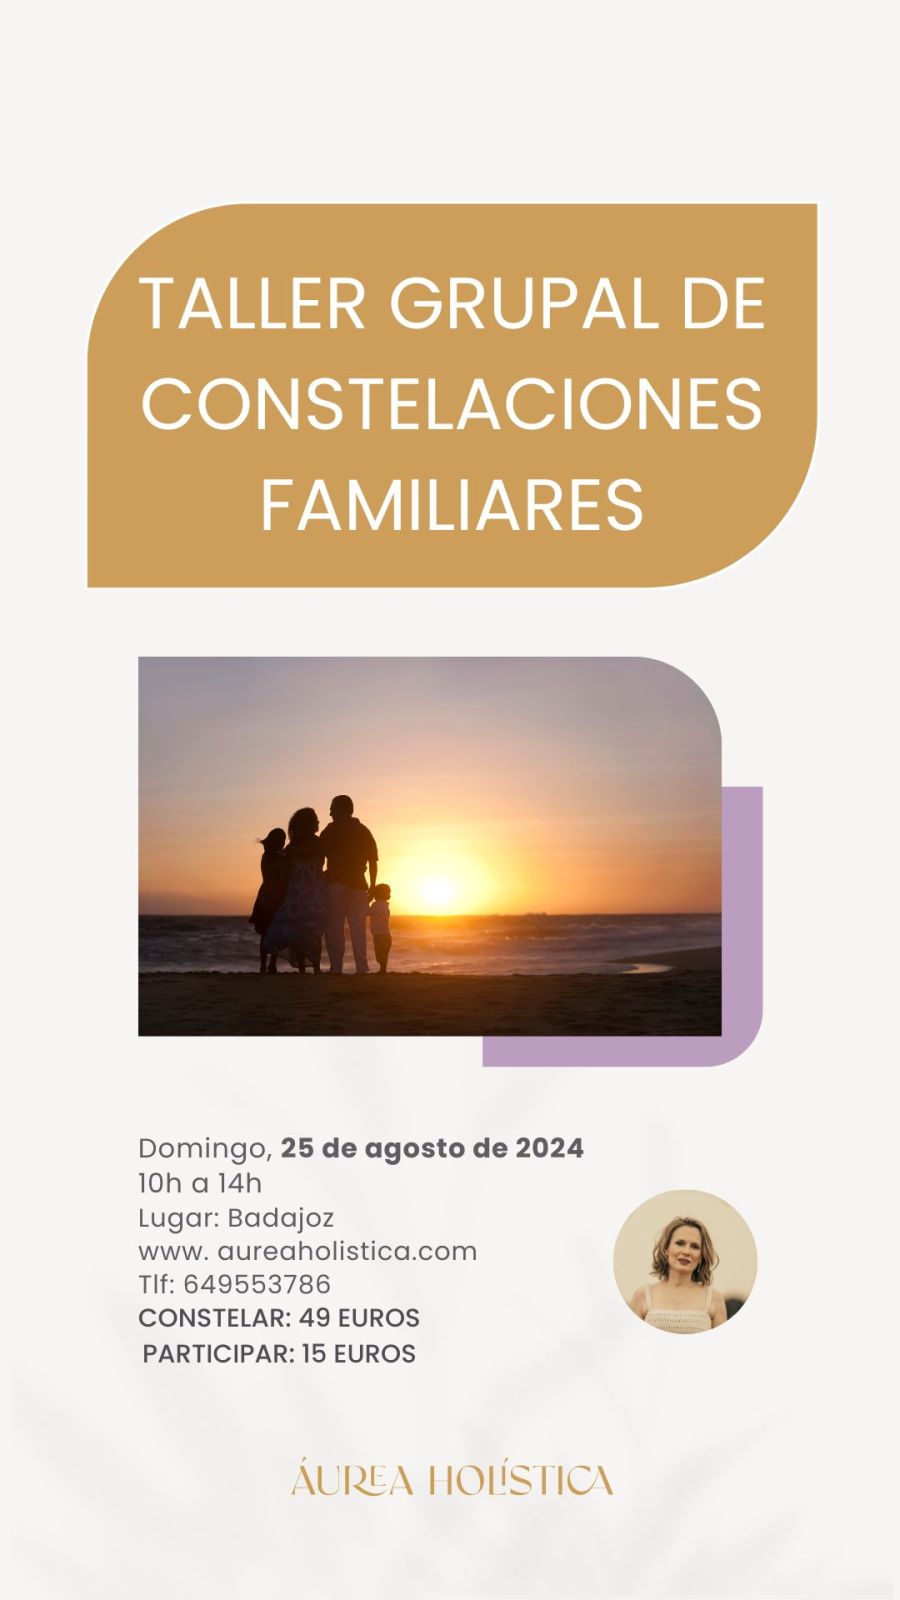 TALLER GRUPAL DE CONSTELACIONES FAMILIARES BADAJOZ | 25 de agosto de 2024